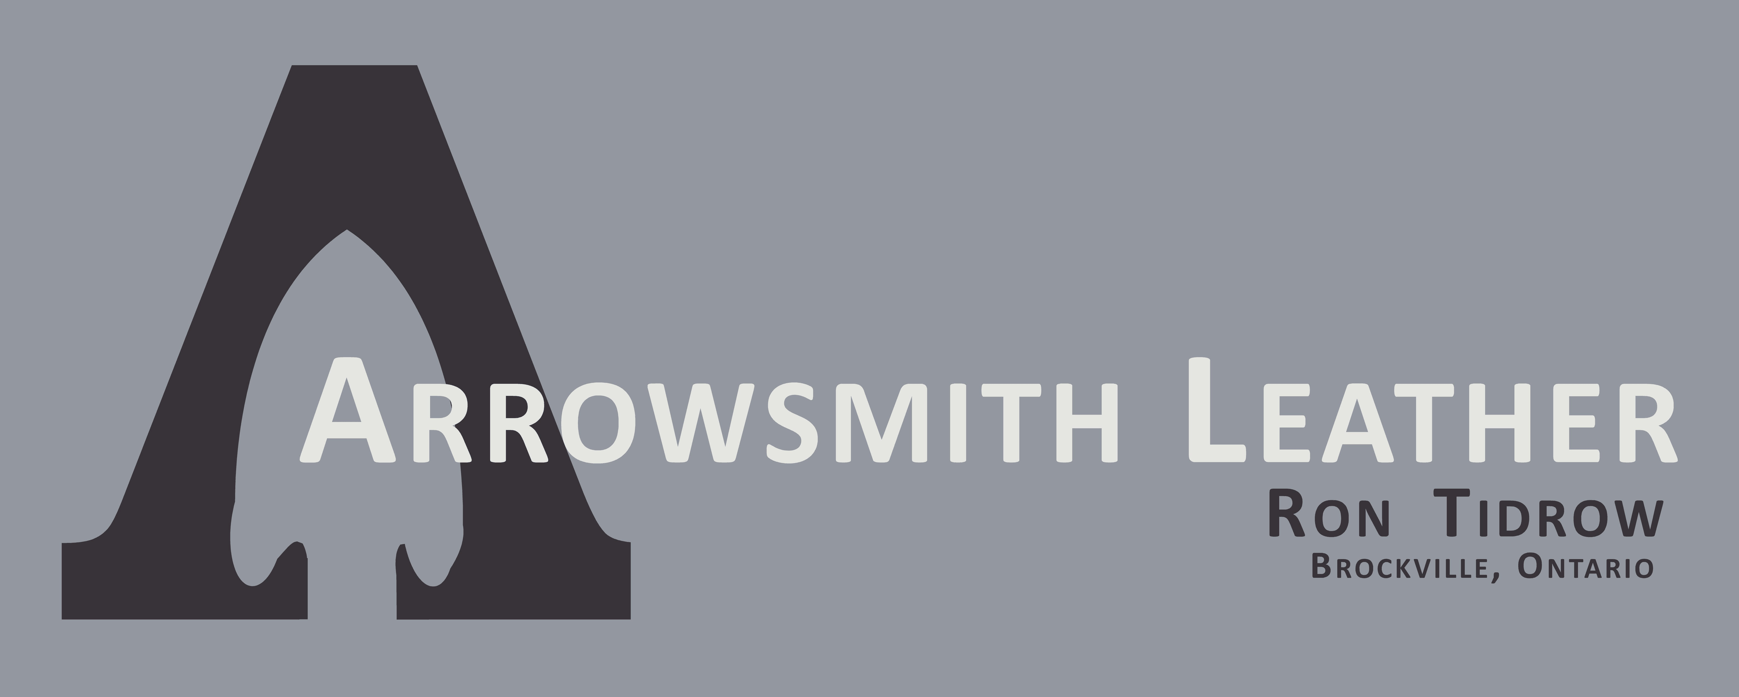 Arrowsmith Leather